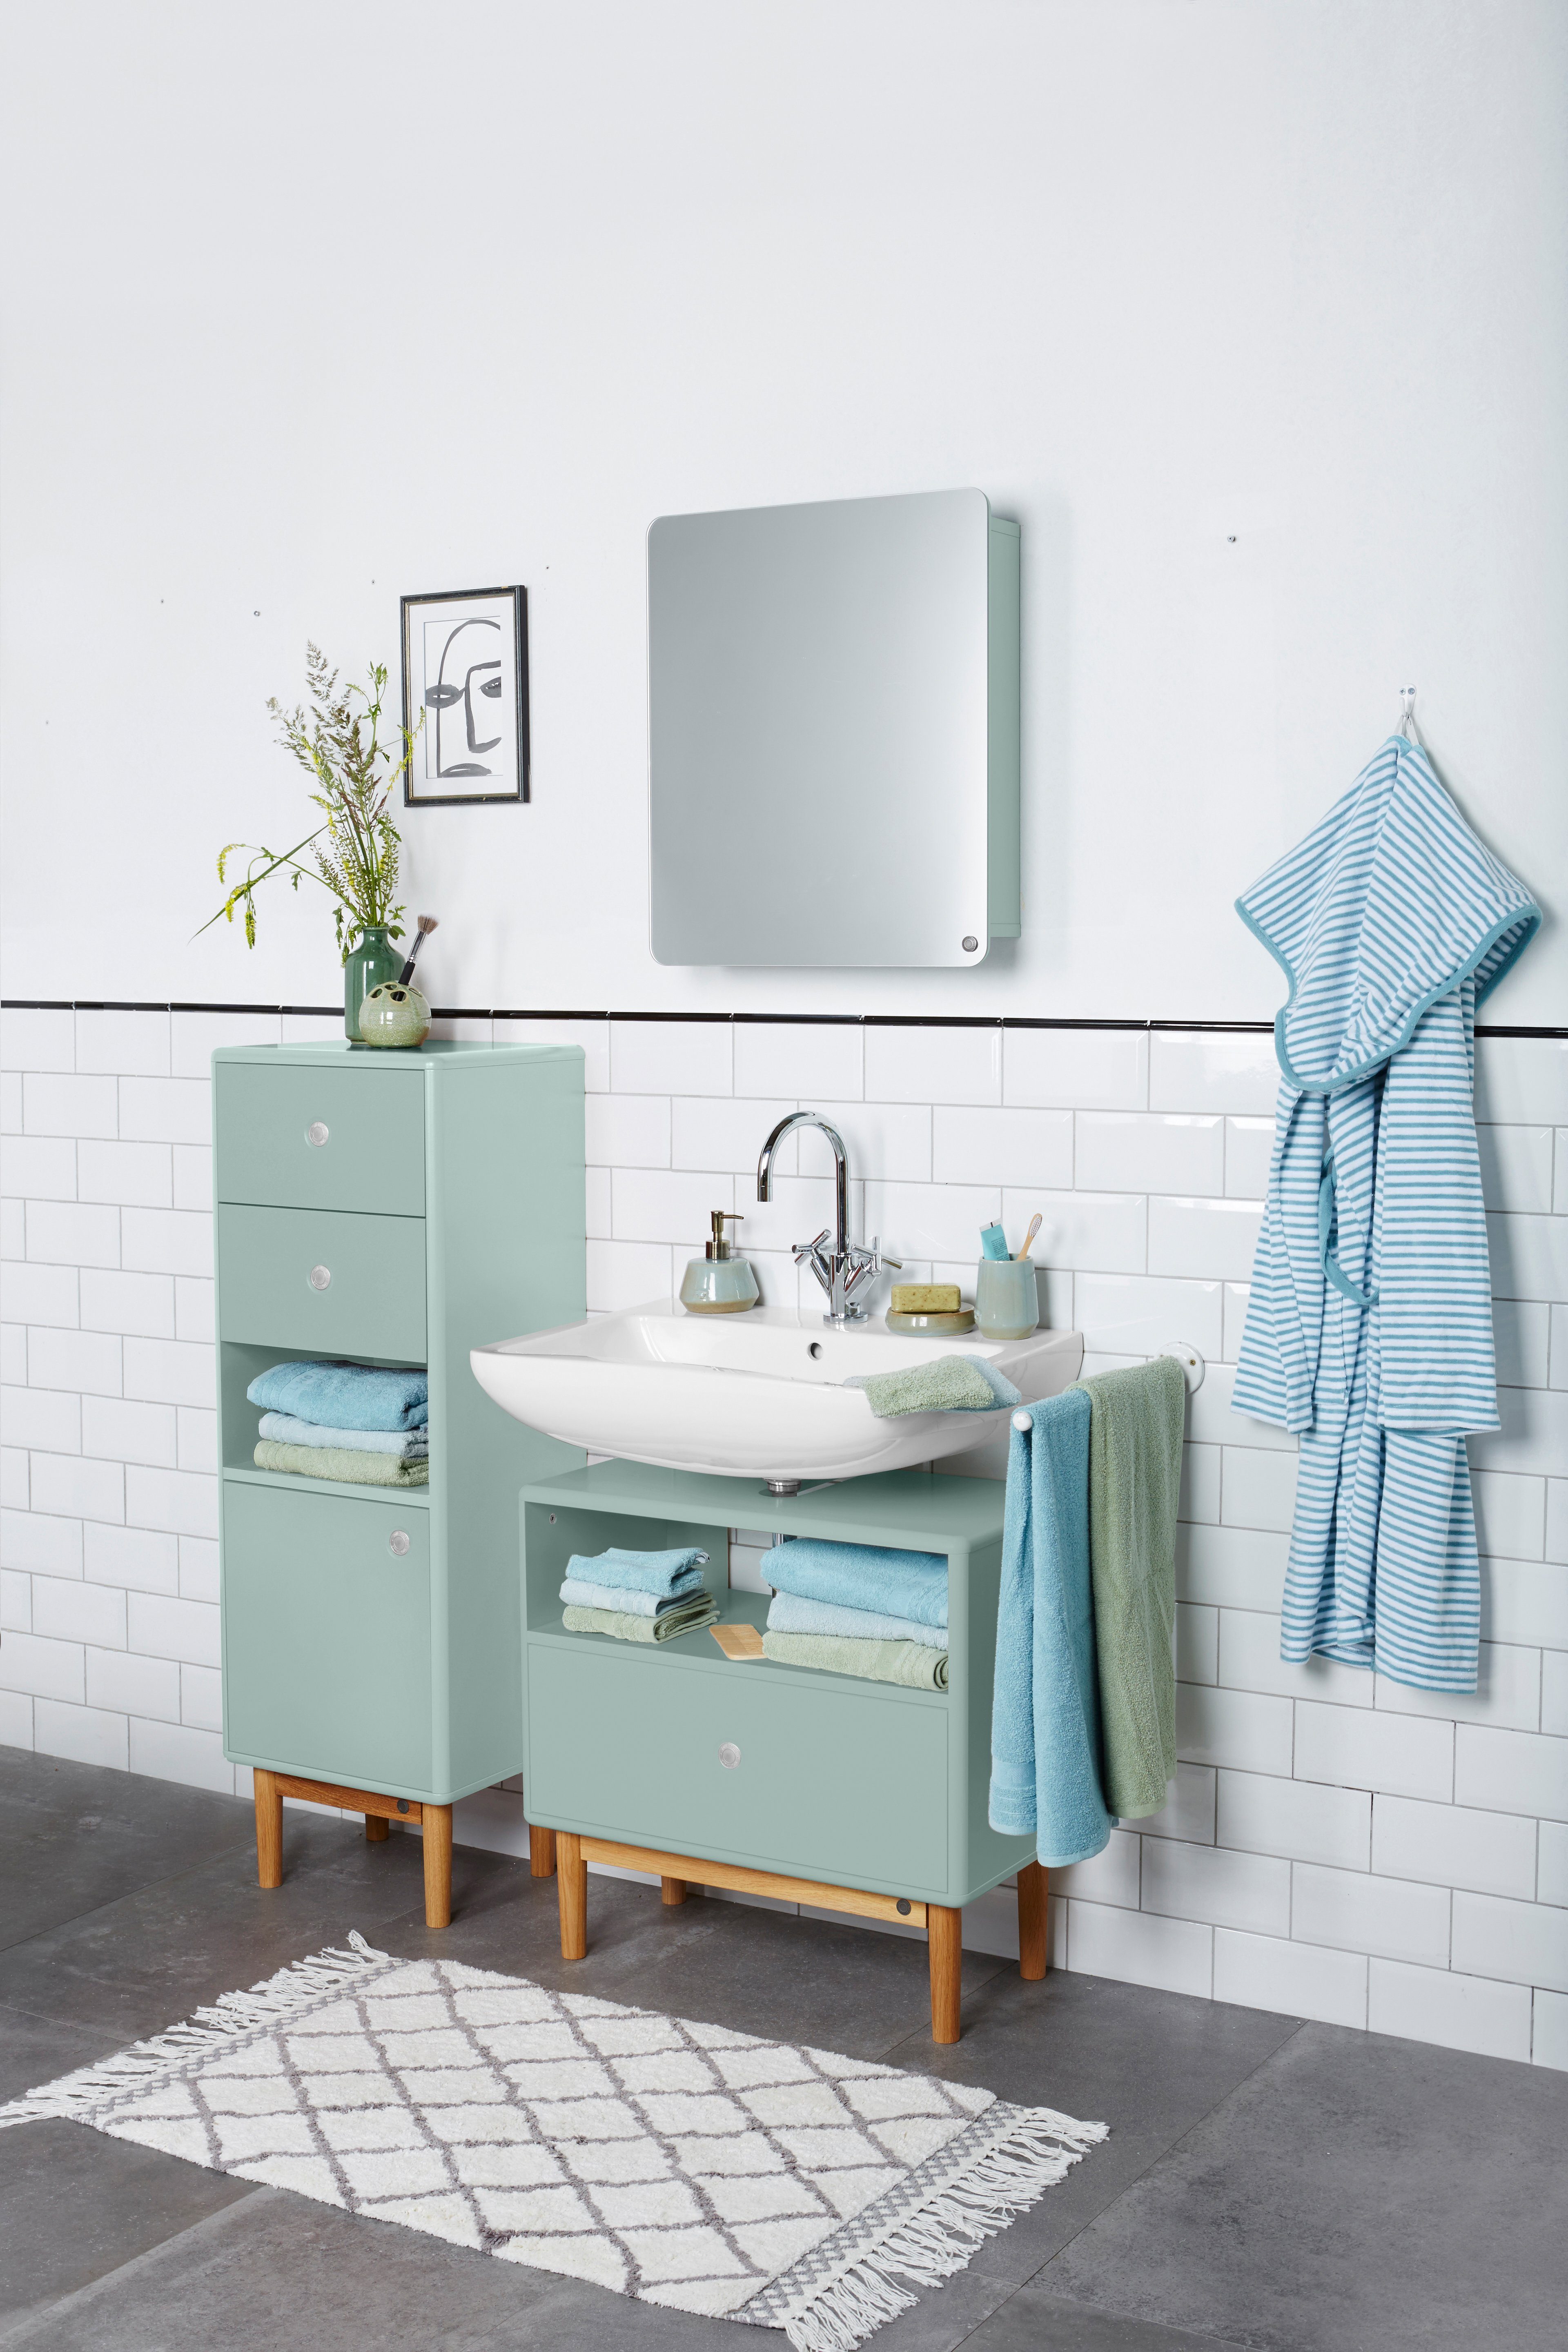 Farben, BATH mit - Mirror MDF seidenmatt Tür lackiert mit HOME gerundeten - aus Stauraum, TAILOR Badspiegel in TOM mit COLOR vielen Ecken, sage_076 Tür Small